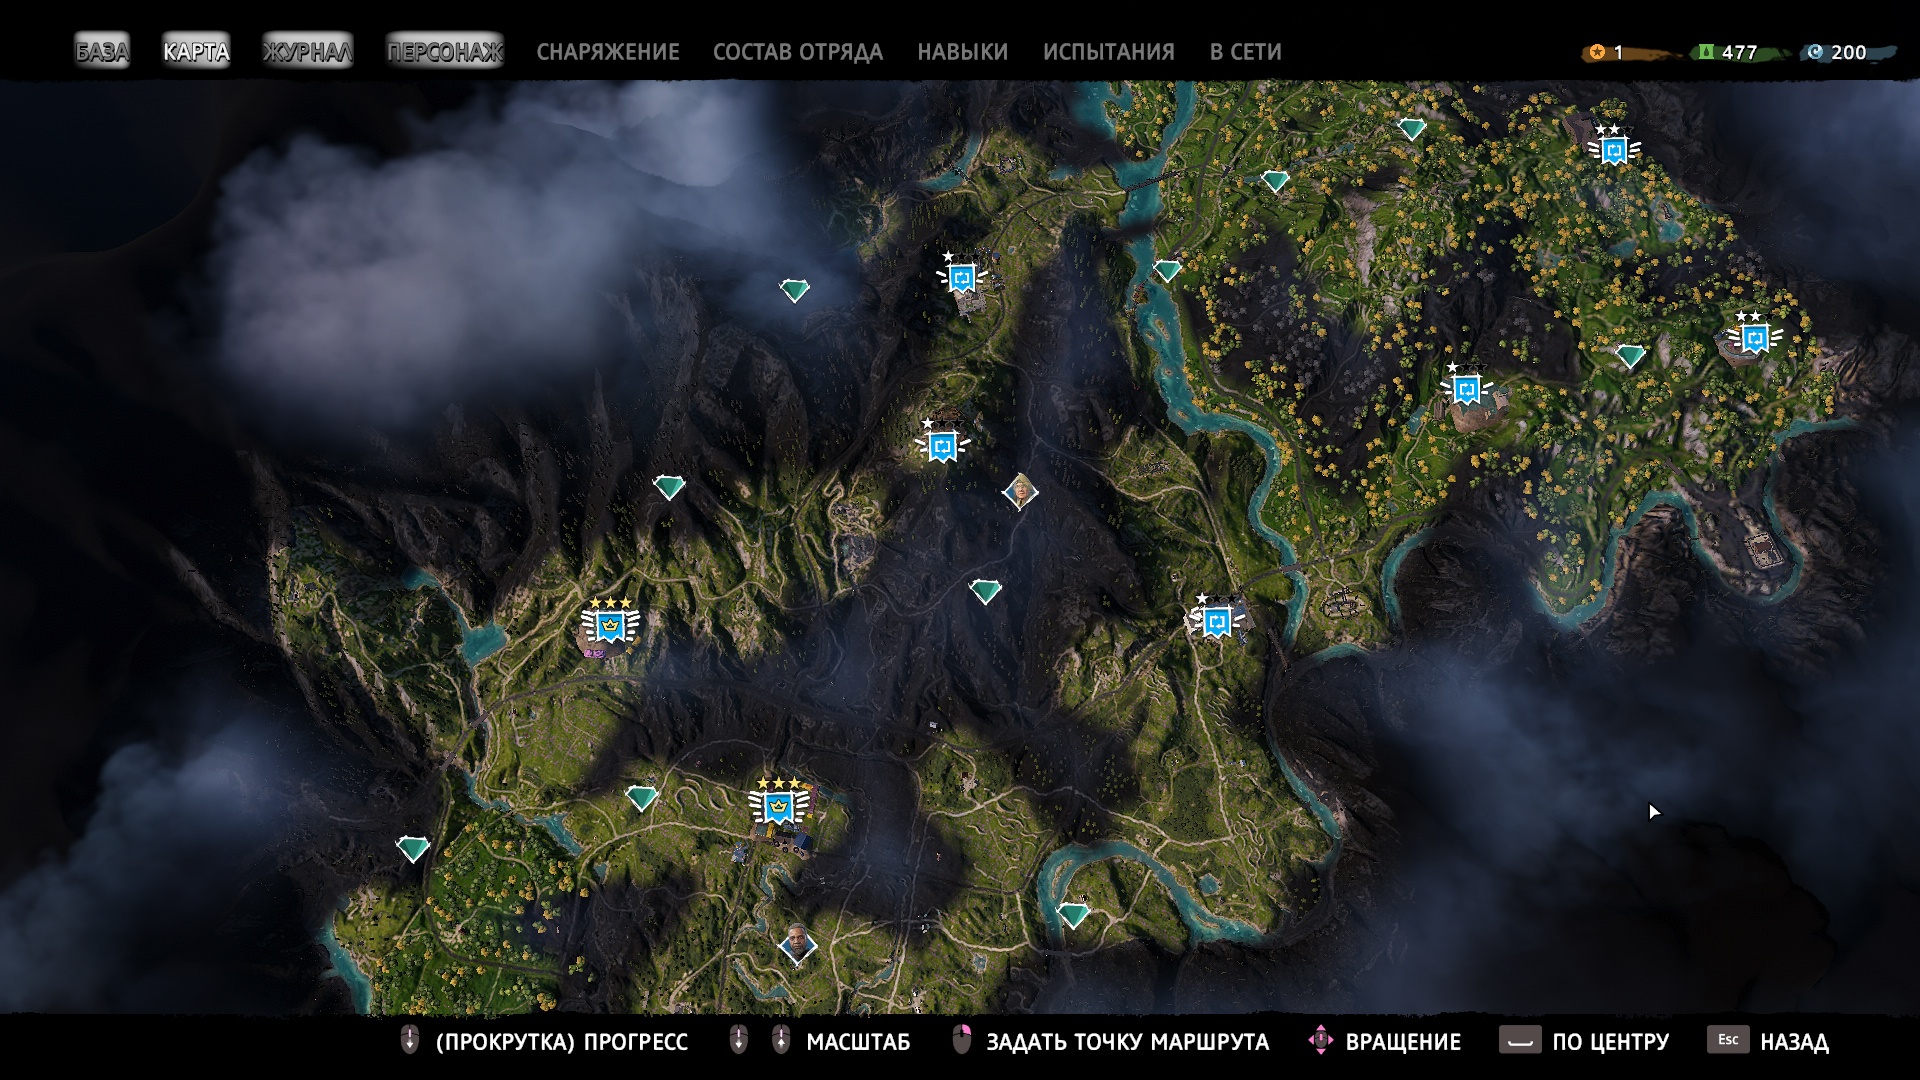 Тайники в фар край 5. Карта фар край 6. Фар край 5 Нью давн карта. Карта far Cry New Dawn открытая. Открытая карта far Cry 5.